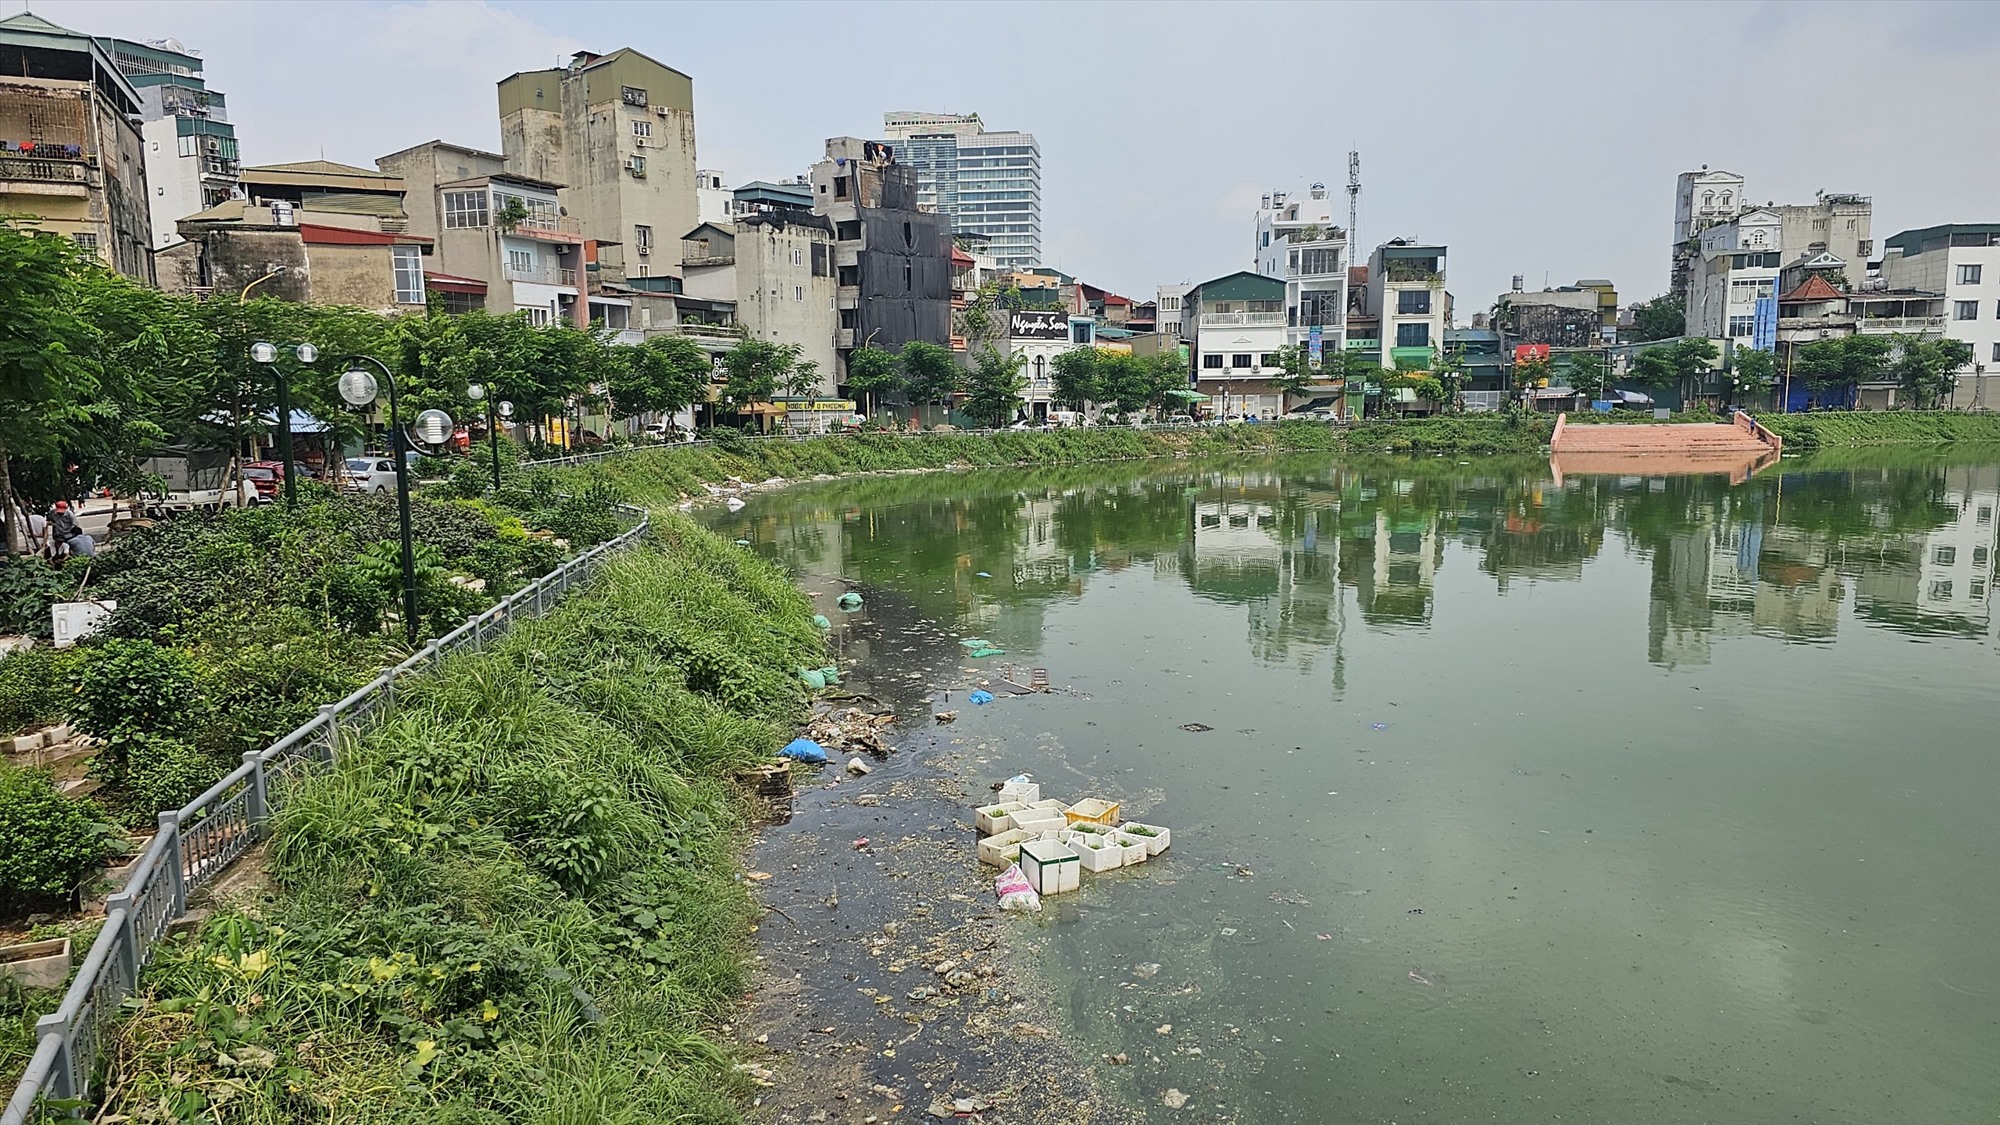 Tuy nhiên, từ năm 2004, dự án cải tạo hồ Linh Quang đã chính thức được khởi công, nhưng sau gần 20 năm, chất lượng nước của hồ vẫn không mấy cải thiện. Bên dưới hồ nguồn nước bị ô nhiễm, rác thải bủa vây; bên trên nhiều vi phạm về trật tự đô thị, an toàn giao thông khiến nhiều người dân bức xúc.